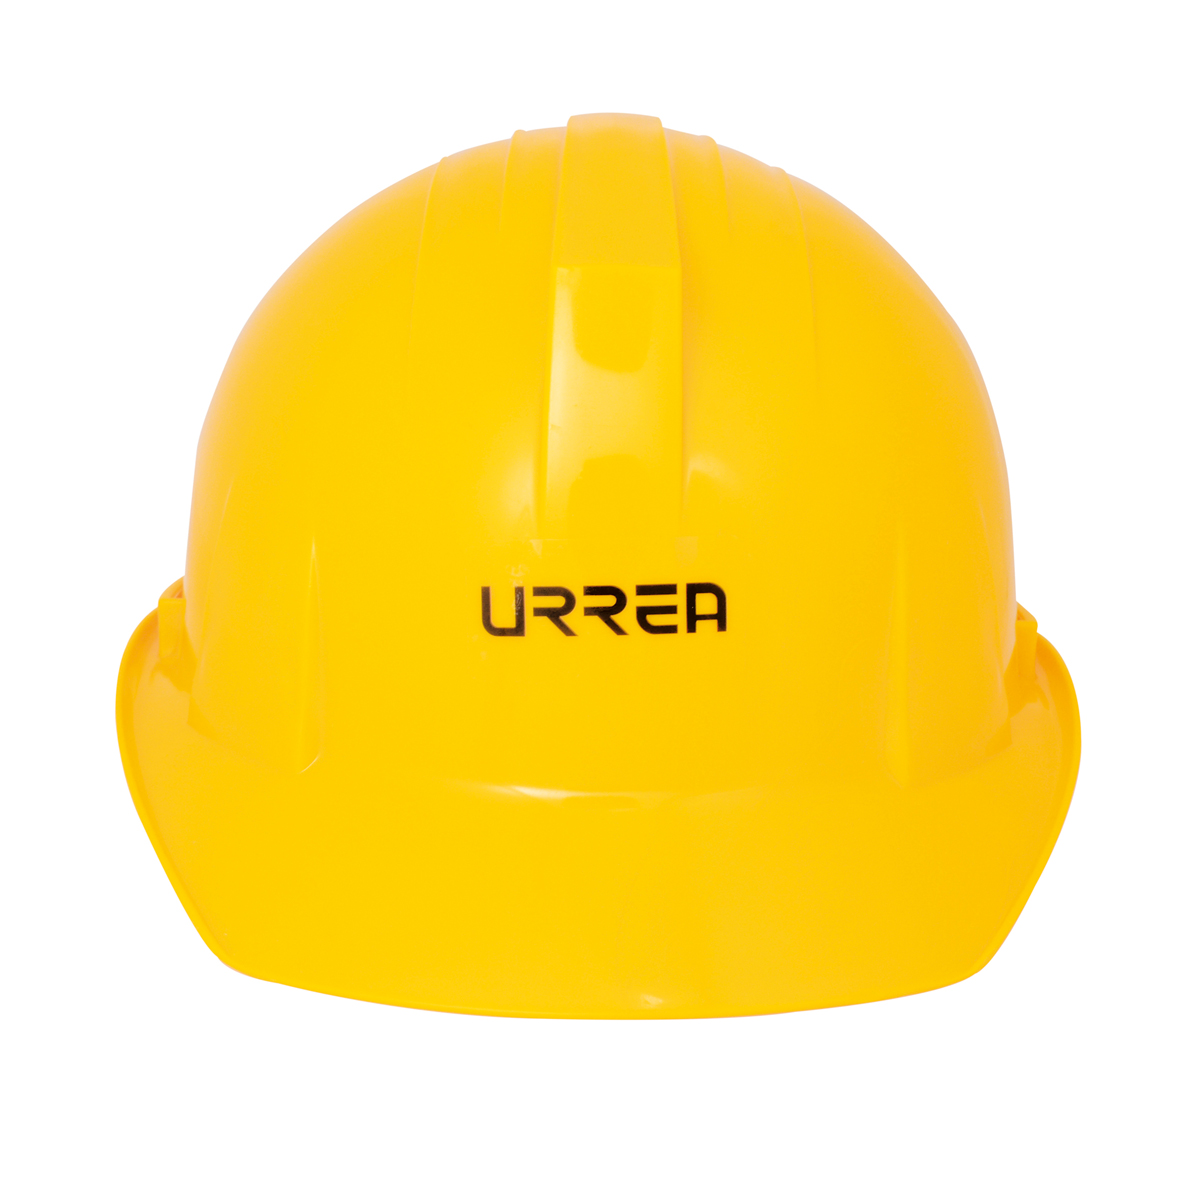 Imagen para Casco de seguridad con ajustede intervalos color amarillo de Grupo Urrea